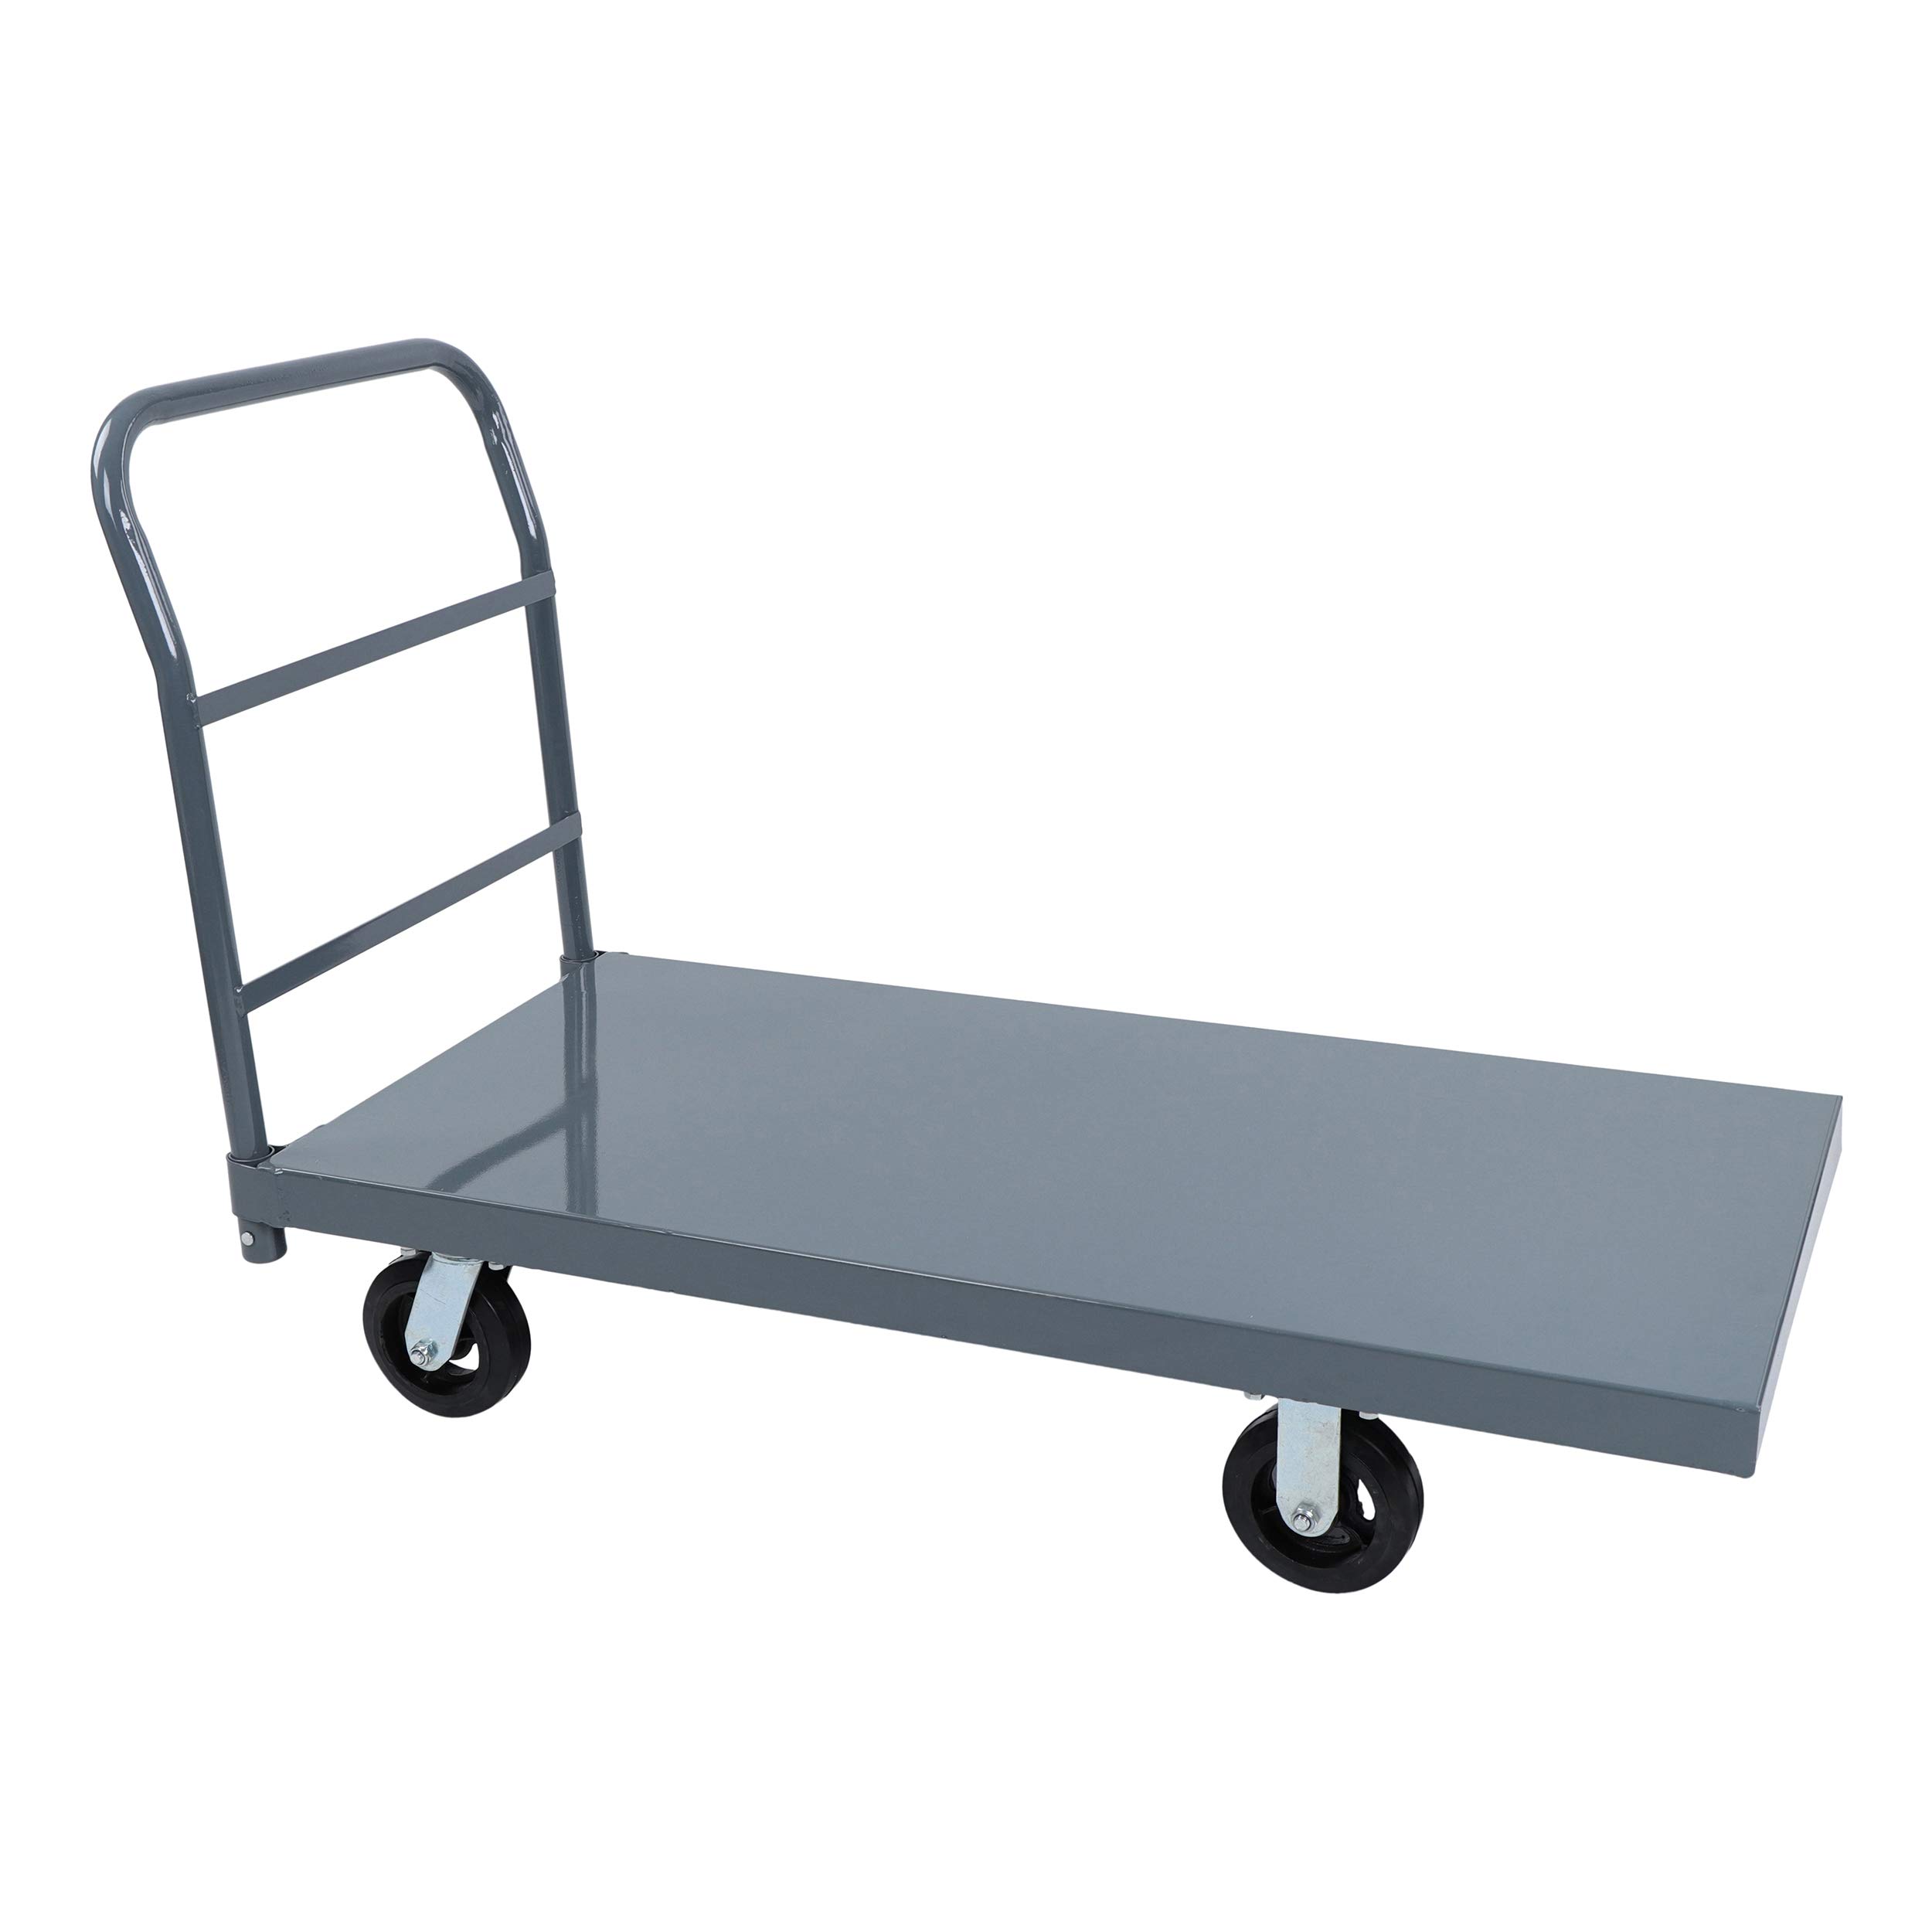 BISupply Wózek przemysłowy z płaską platformą 48 x 24 cale Przenośny wózek Dolly Duża platforma z kołami Pojemność 2000 funtów